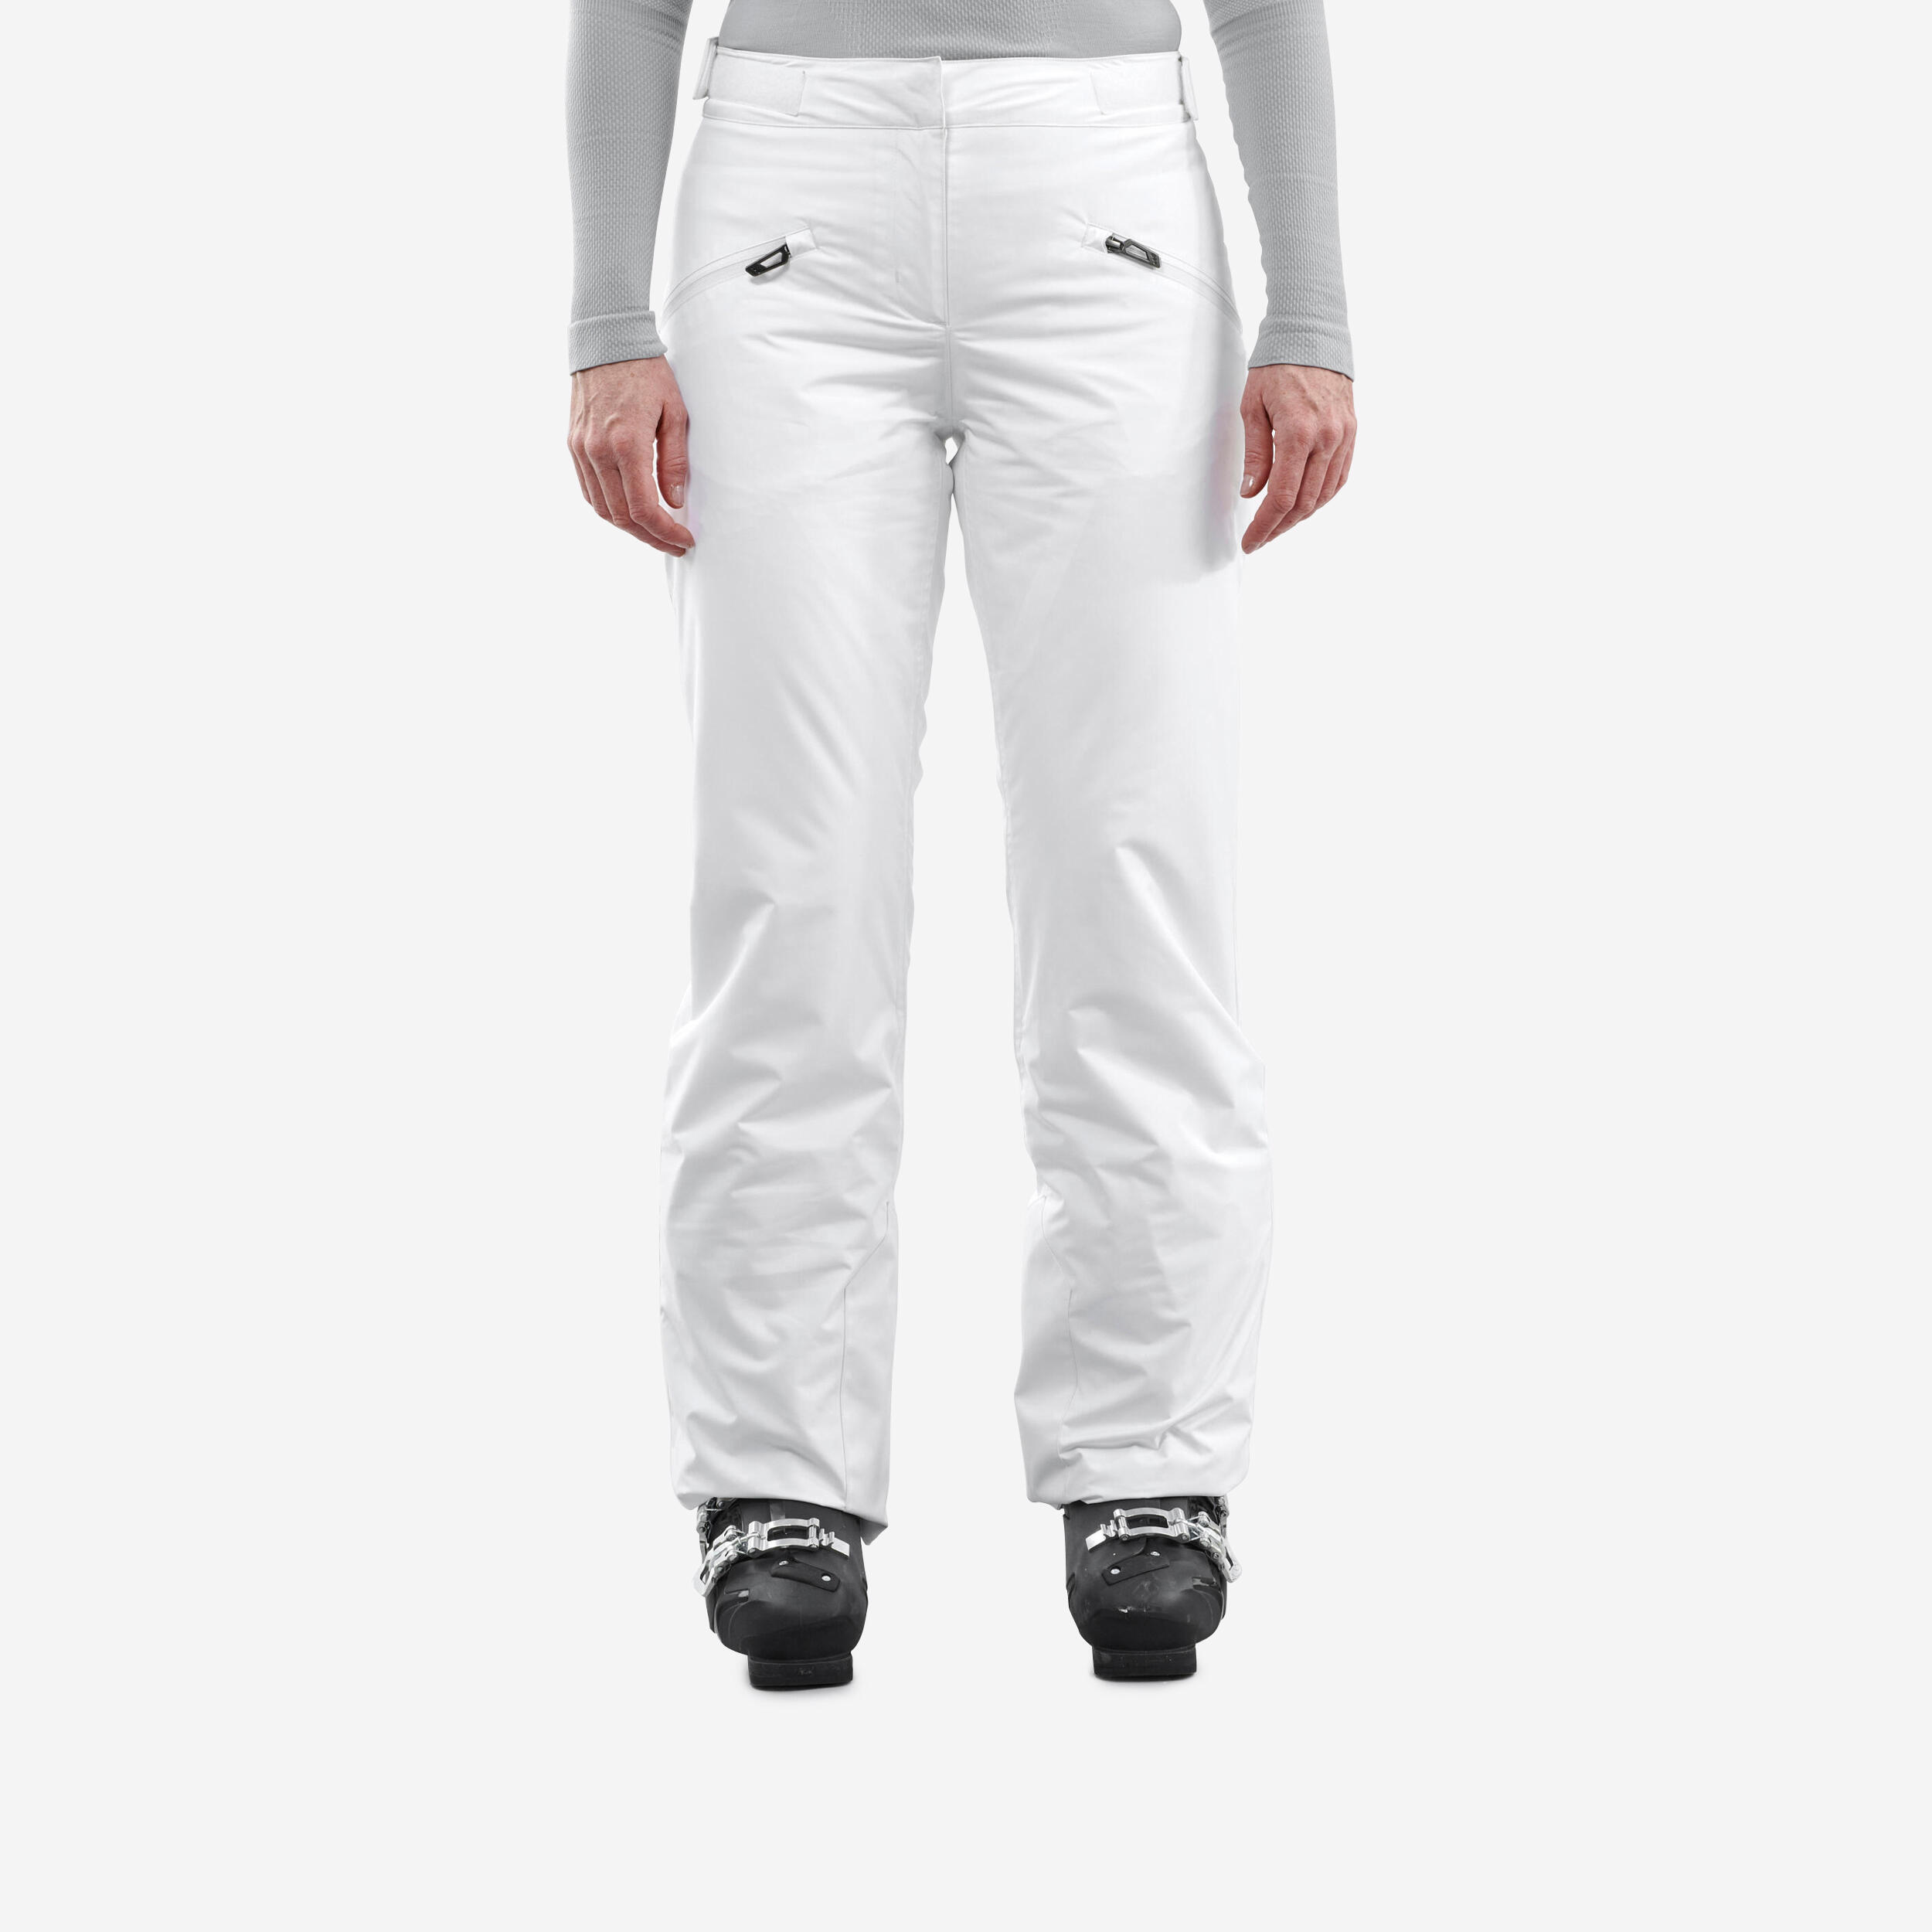 Pantalon d'hiver femme – ski 180 blanc - Blanc glacier - Wedze - Décathlon